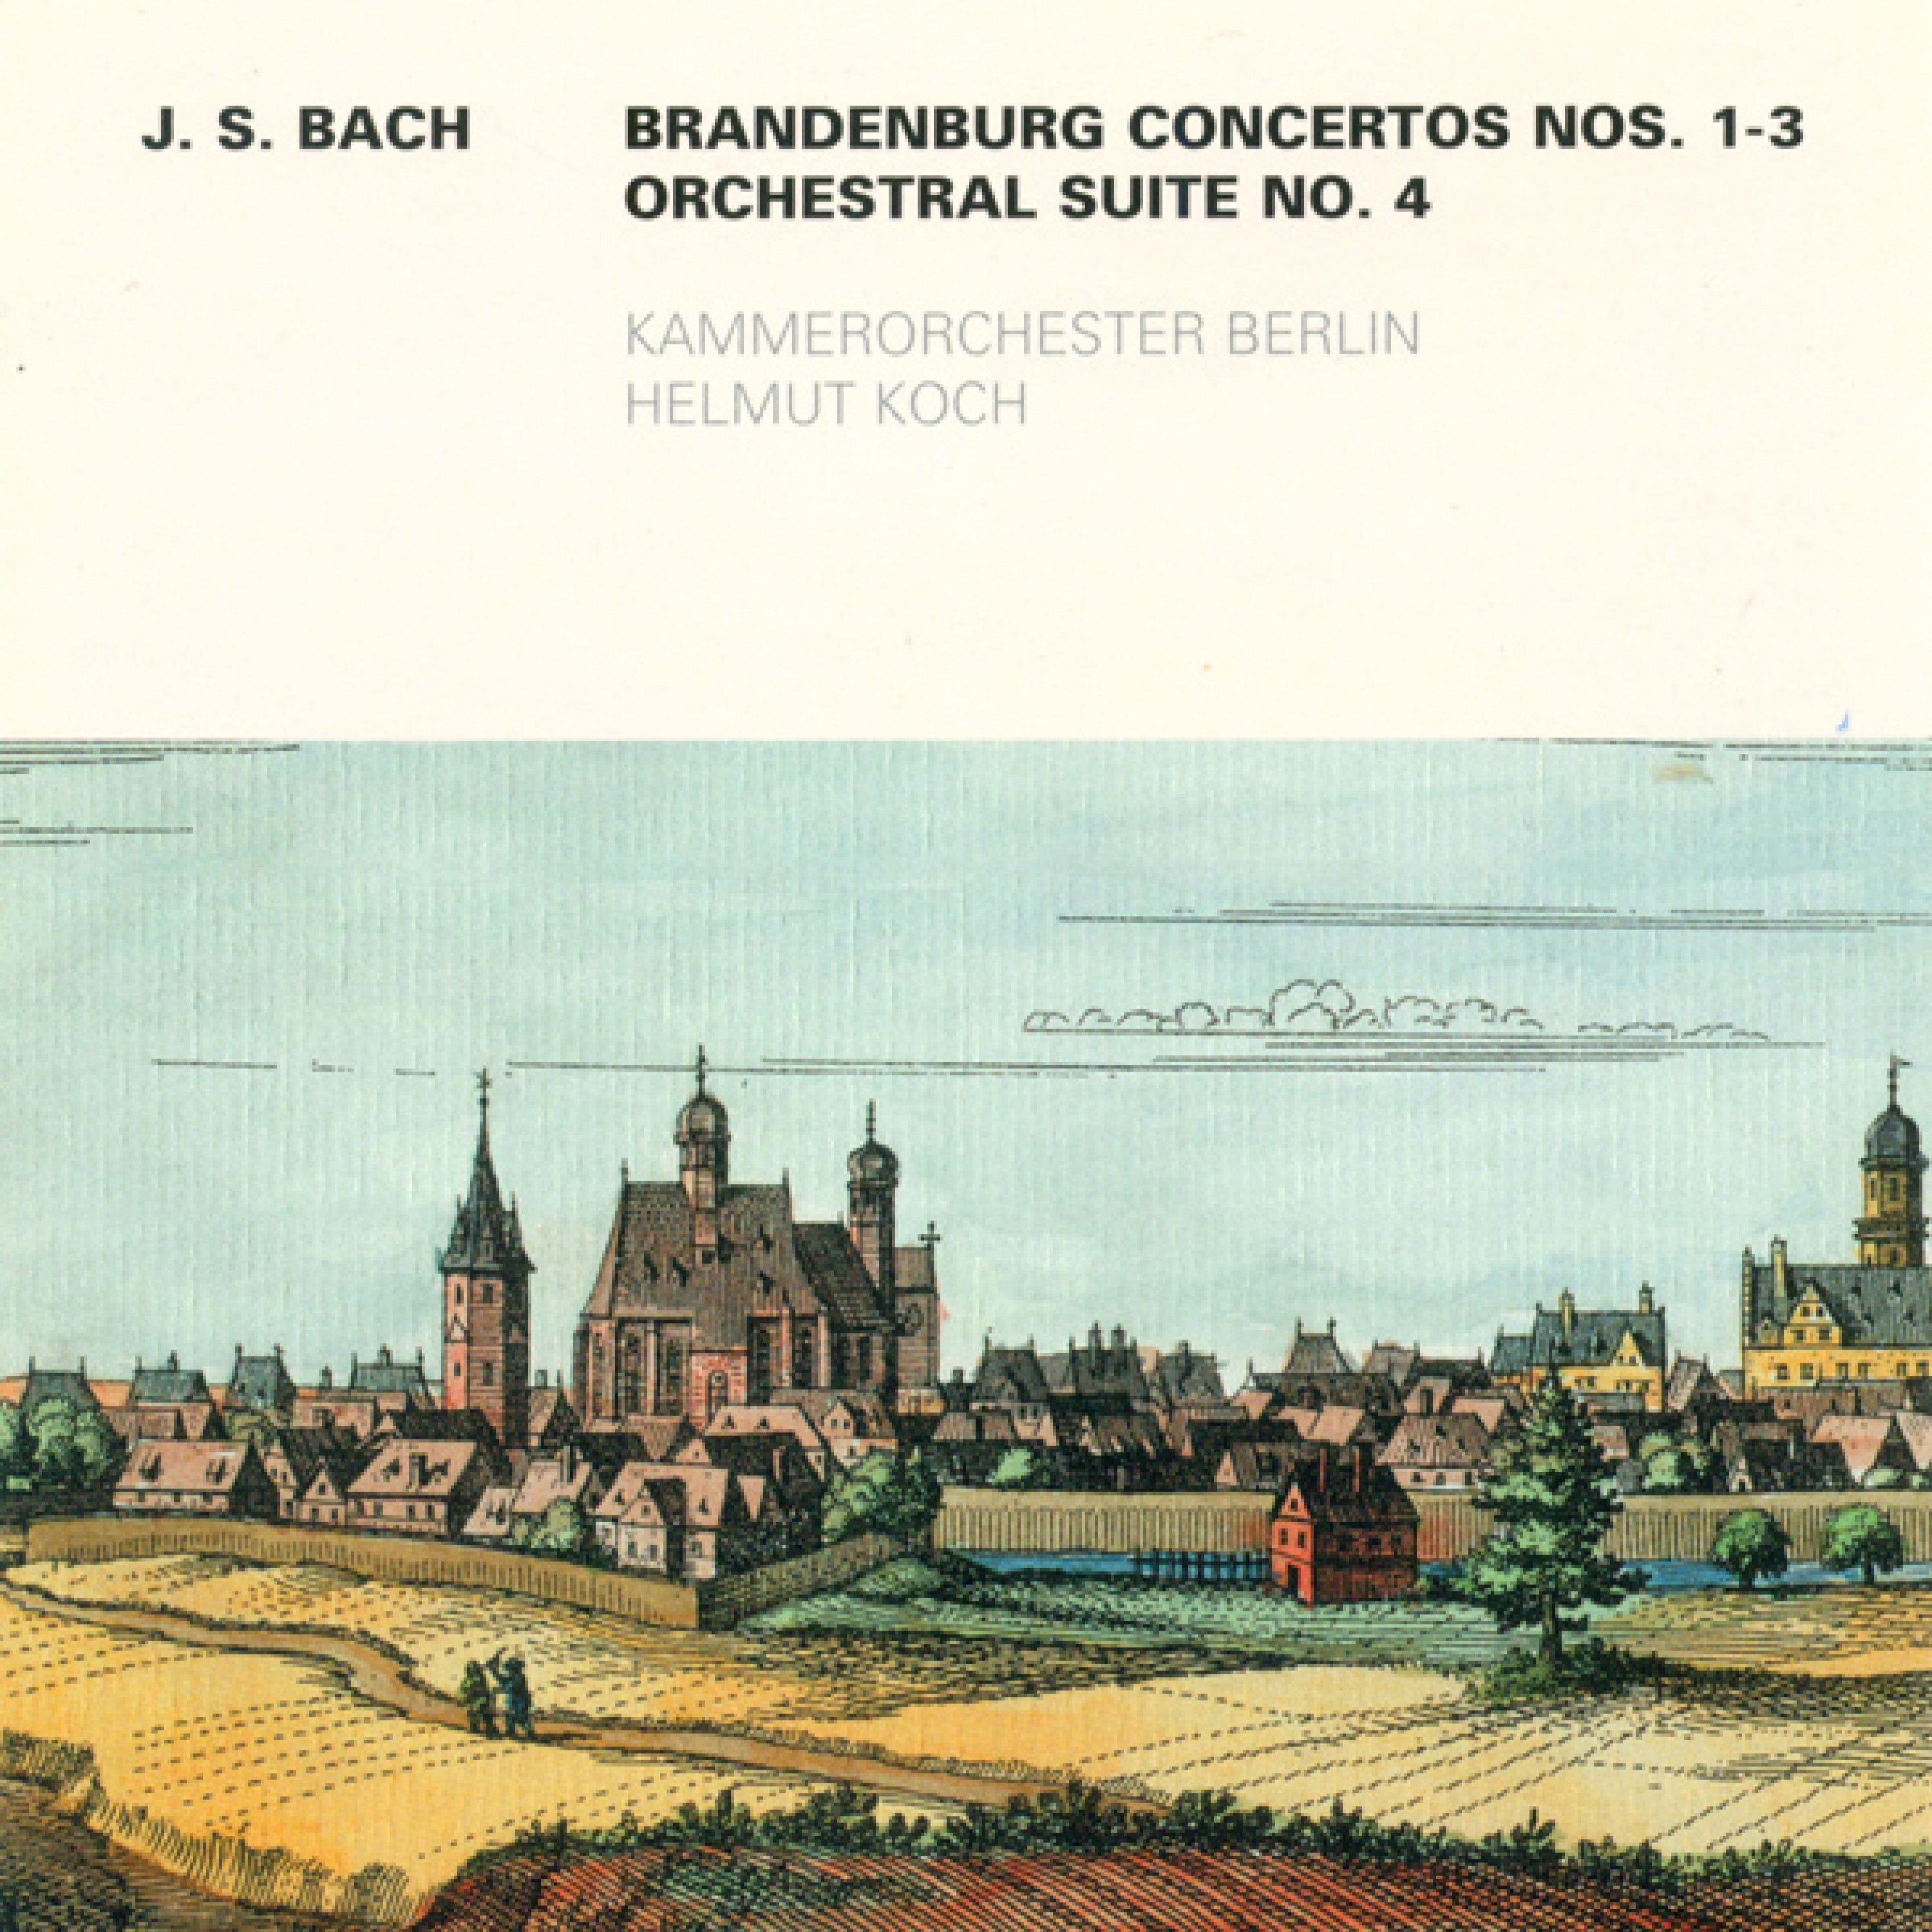 Brandenburg Concerto No. 1 in F major, BWV 1046: I. (Allegro non troppo)